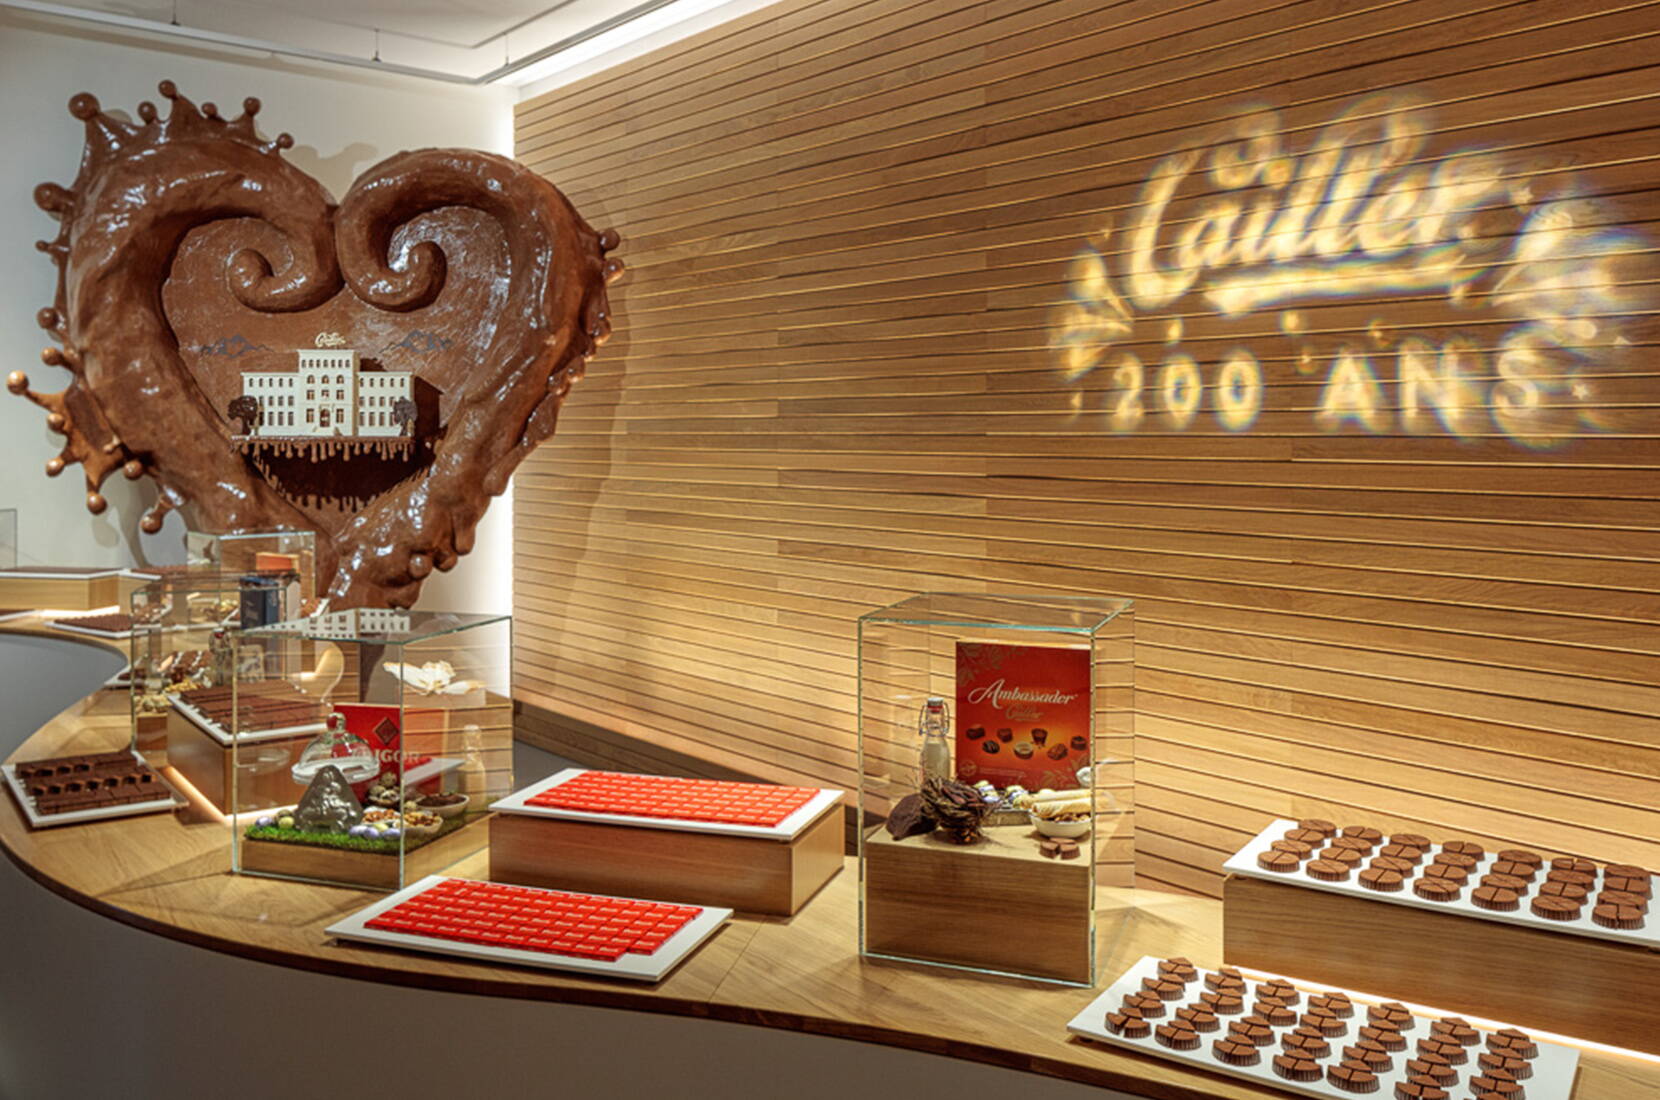 Tu rêves de visiter une véritable fabrique de chocolat? Visite la Maison Cailler à Broc et découvre l'univers de Cailler. Apprends tout sur le chocolat grâce à une expérience interactive et multisensorielle, fais la connaissance des chocolatiers ou fabrique ton propre chocolat dans le cadre d'un atelier chocolat.